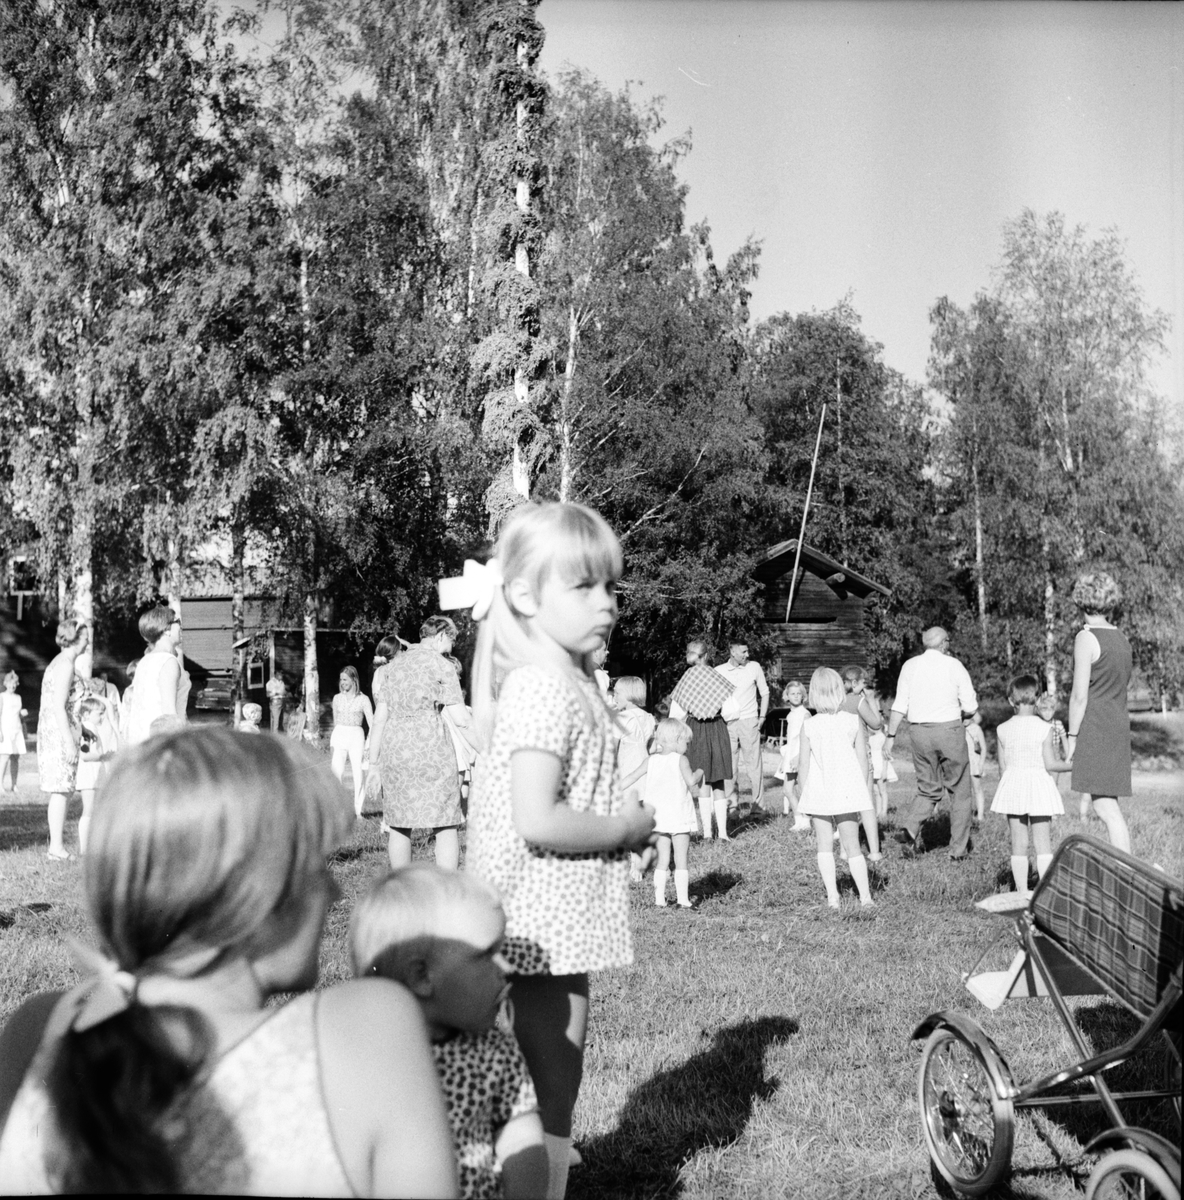 Arbrå,
Midsommarfest,
1969